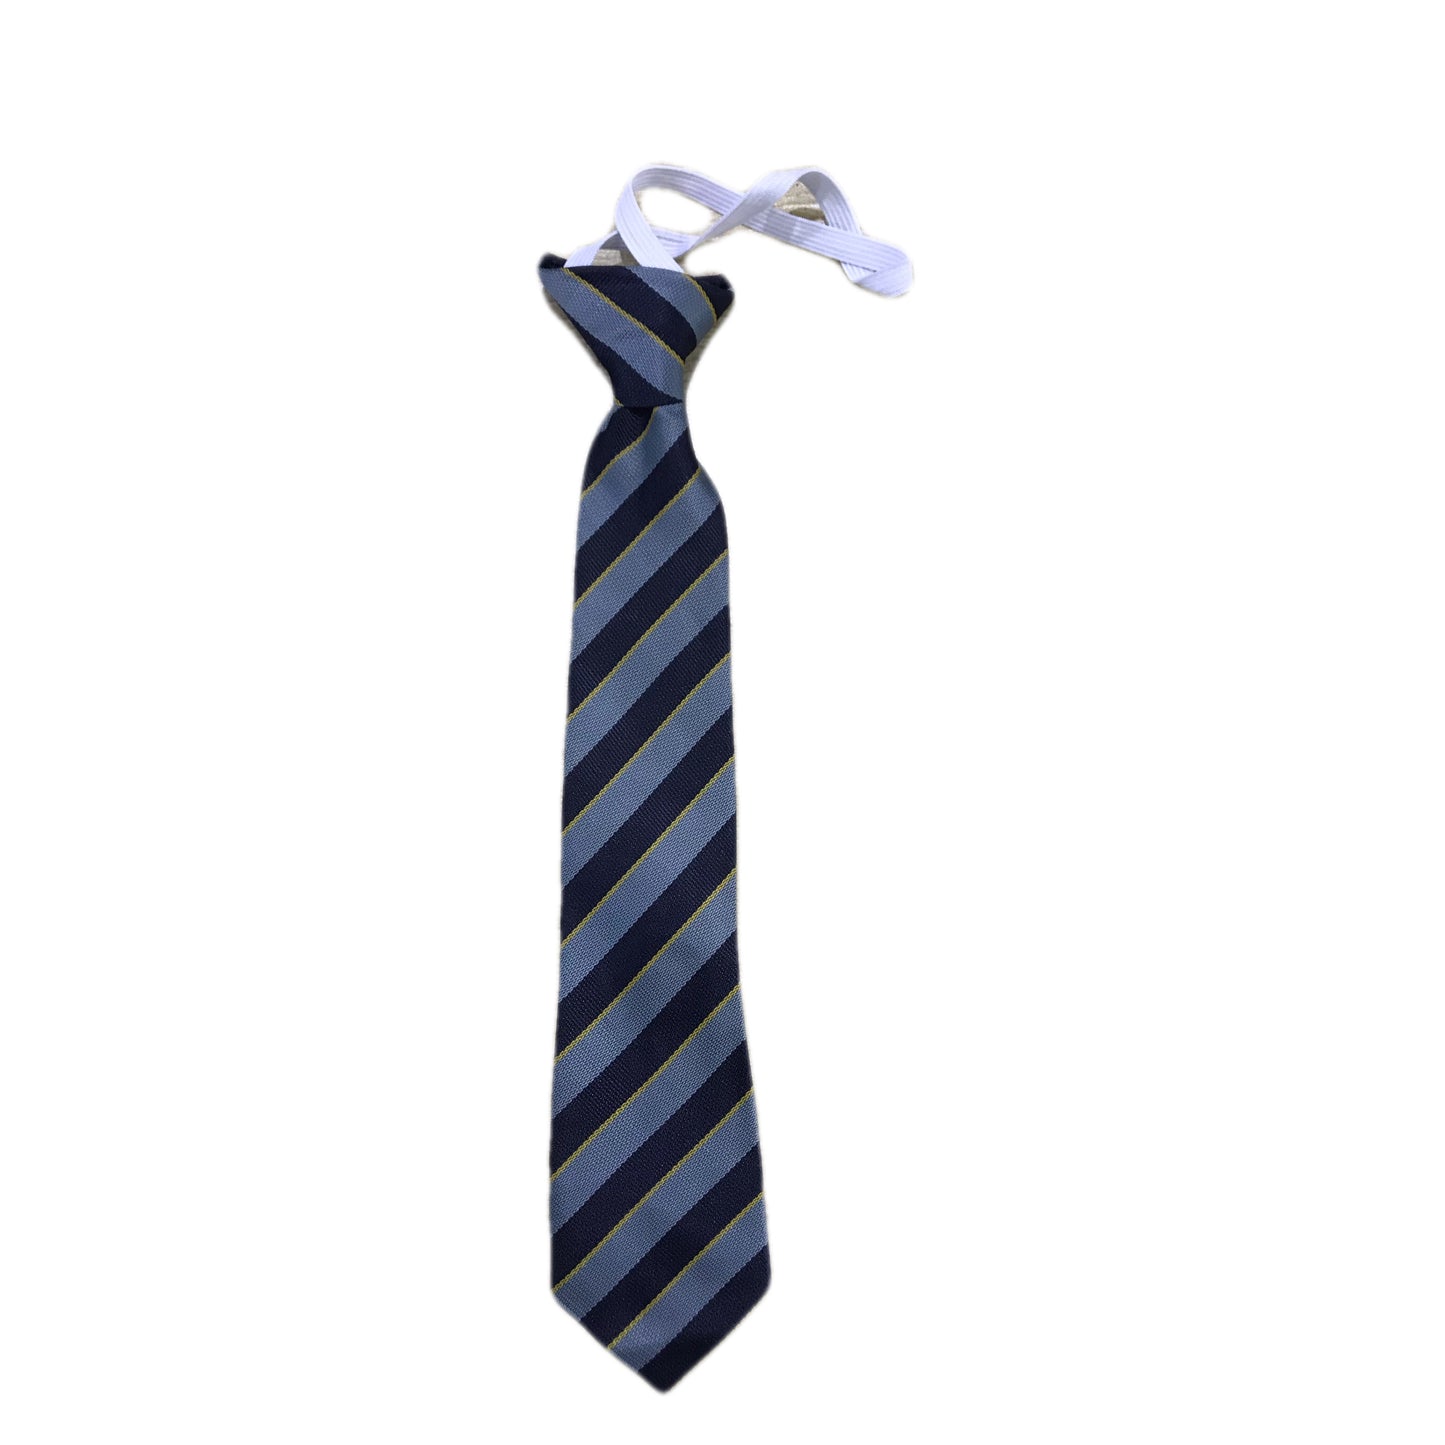 Beaconhouse Tie